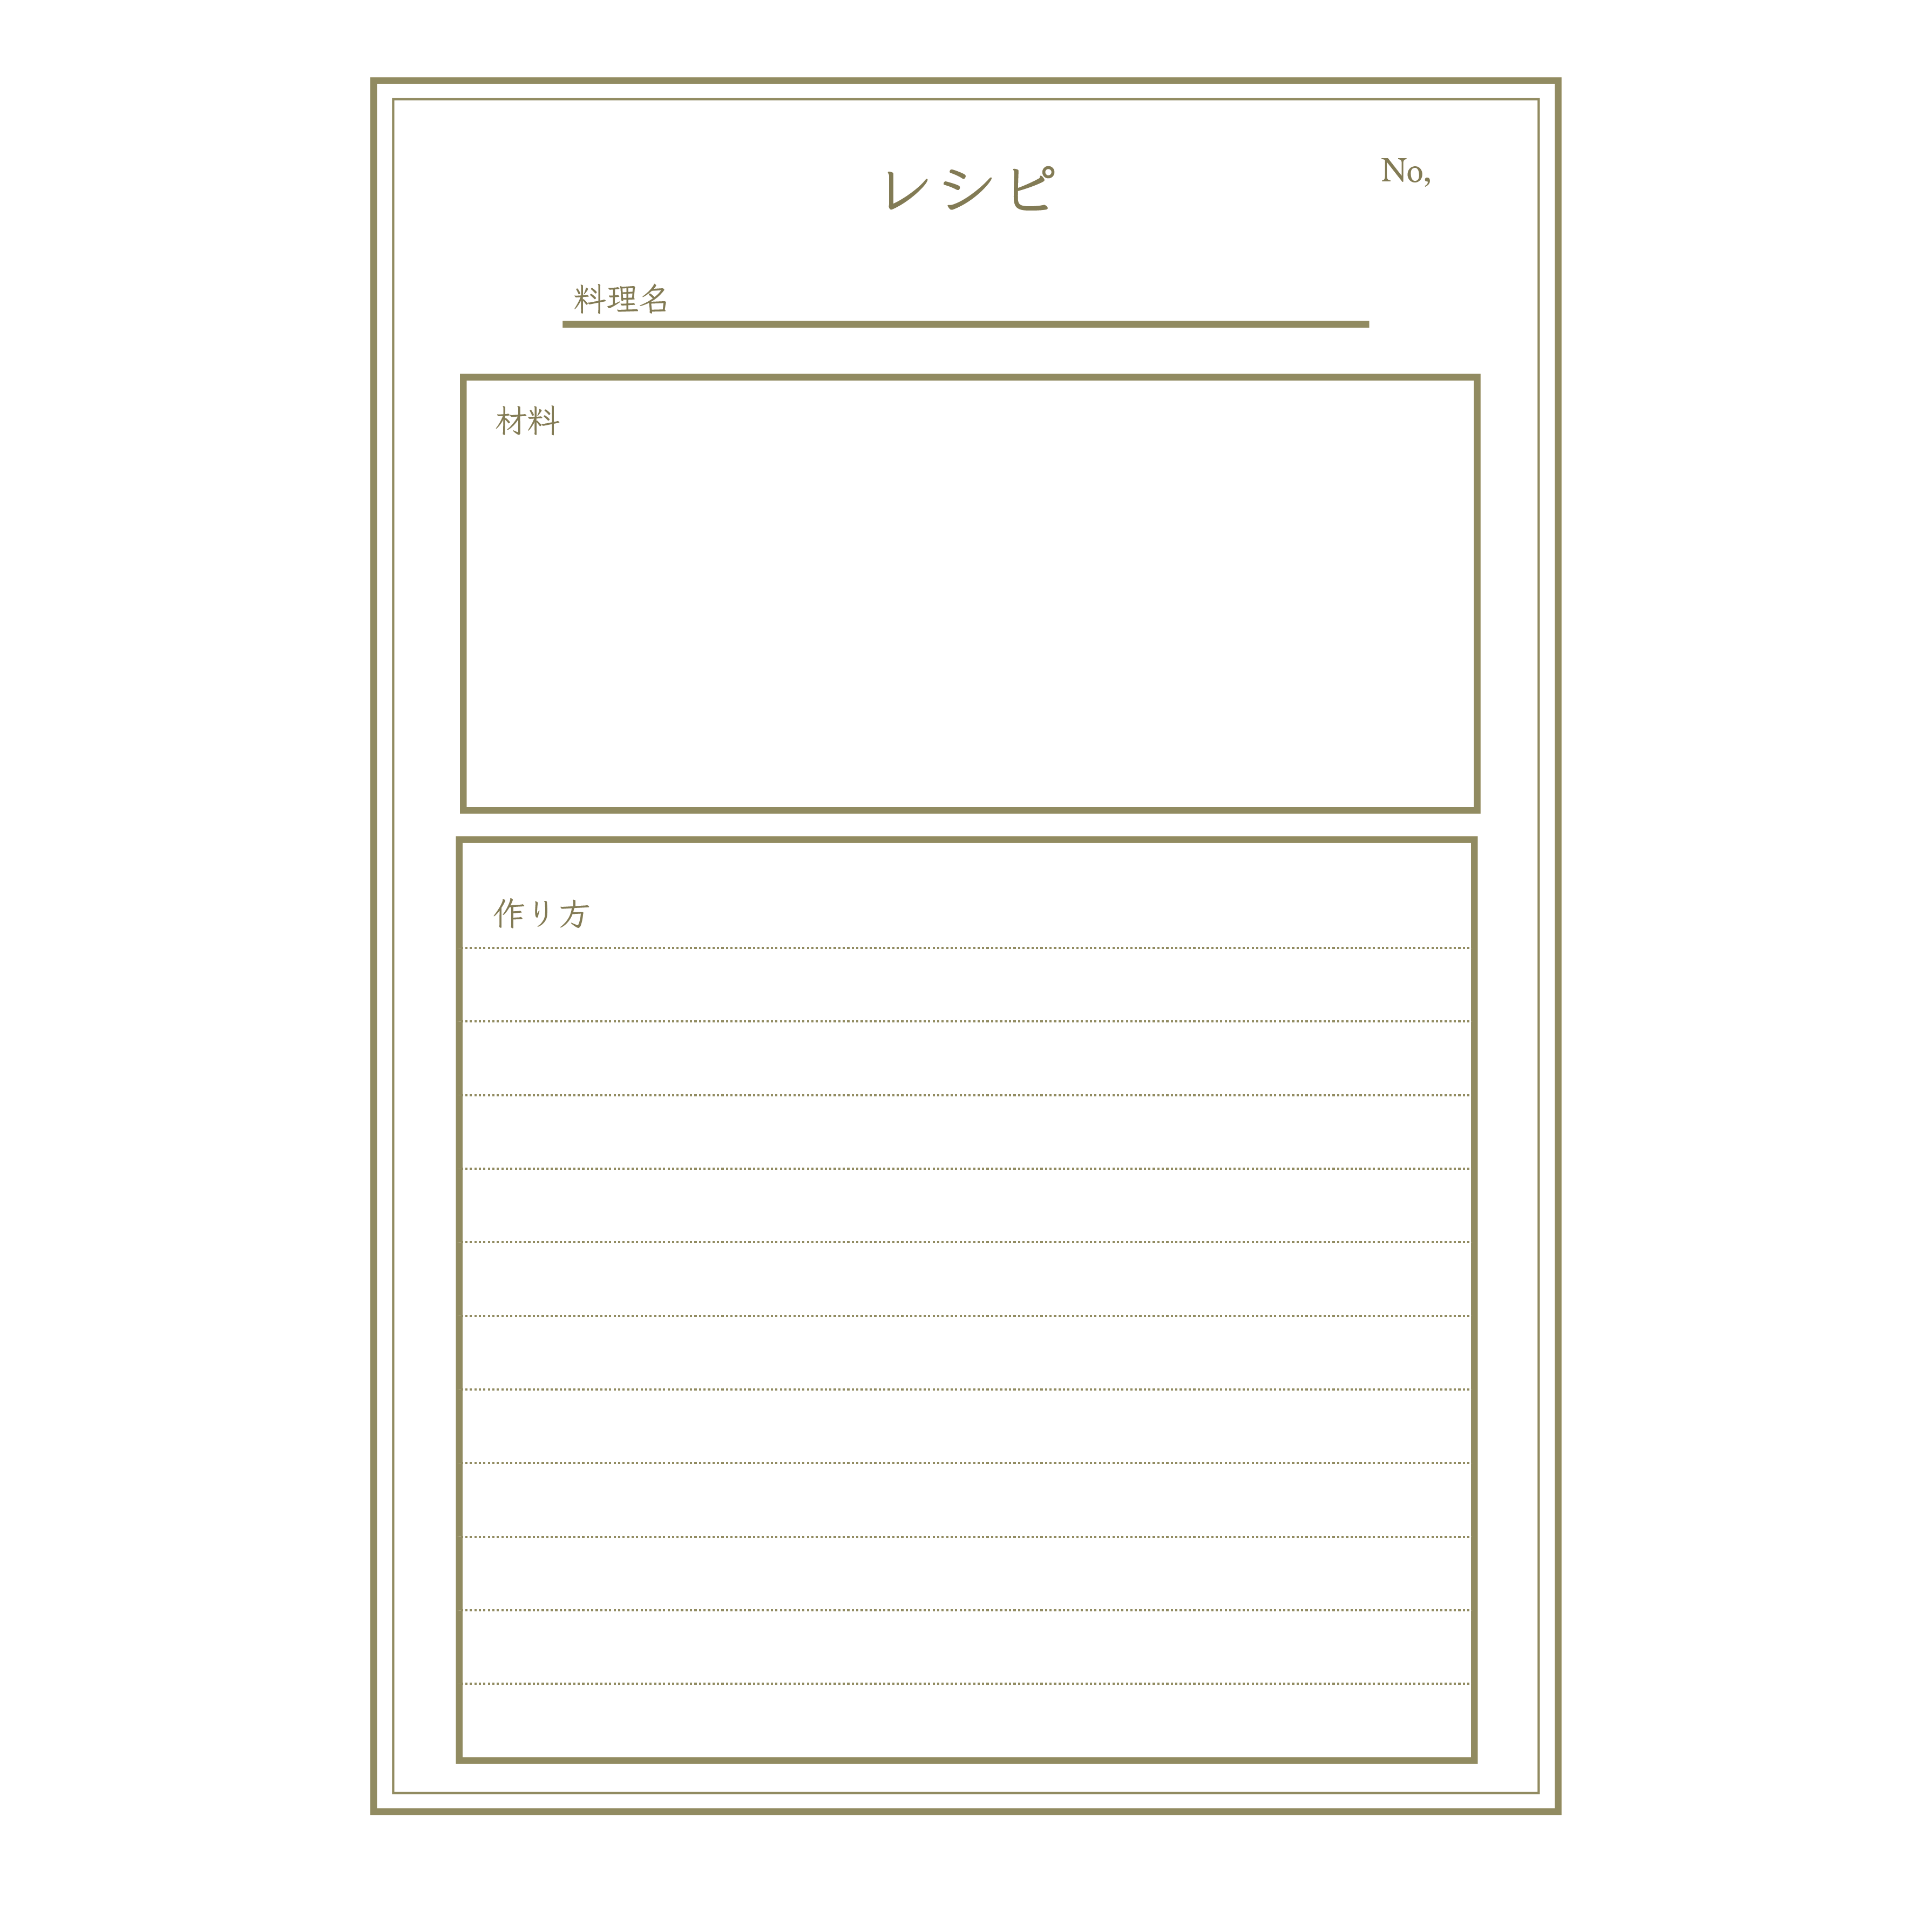 おしゃれなレシピノートのテンプレートa4 日本語 イラスト 商用フリー 無料 のイラスト素材なら イラストマンション